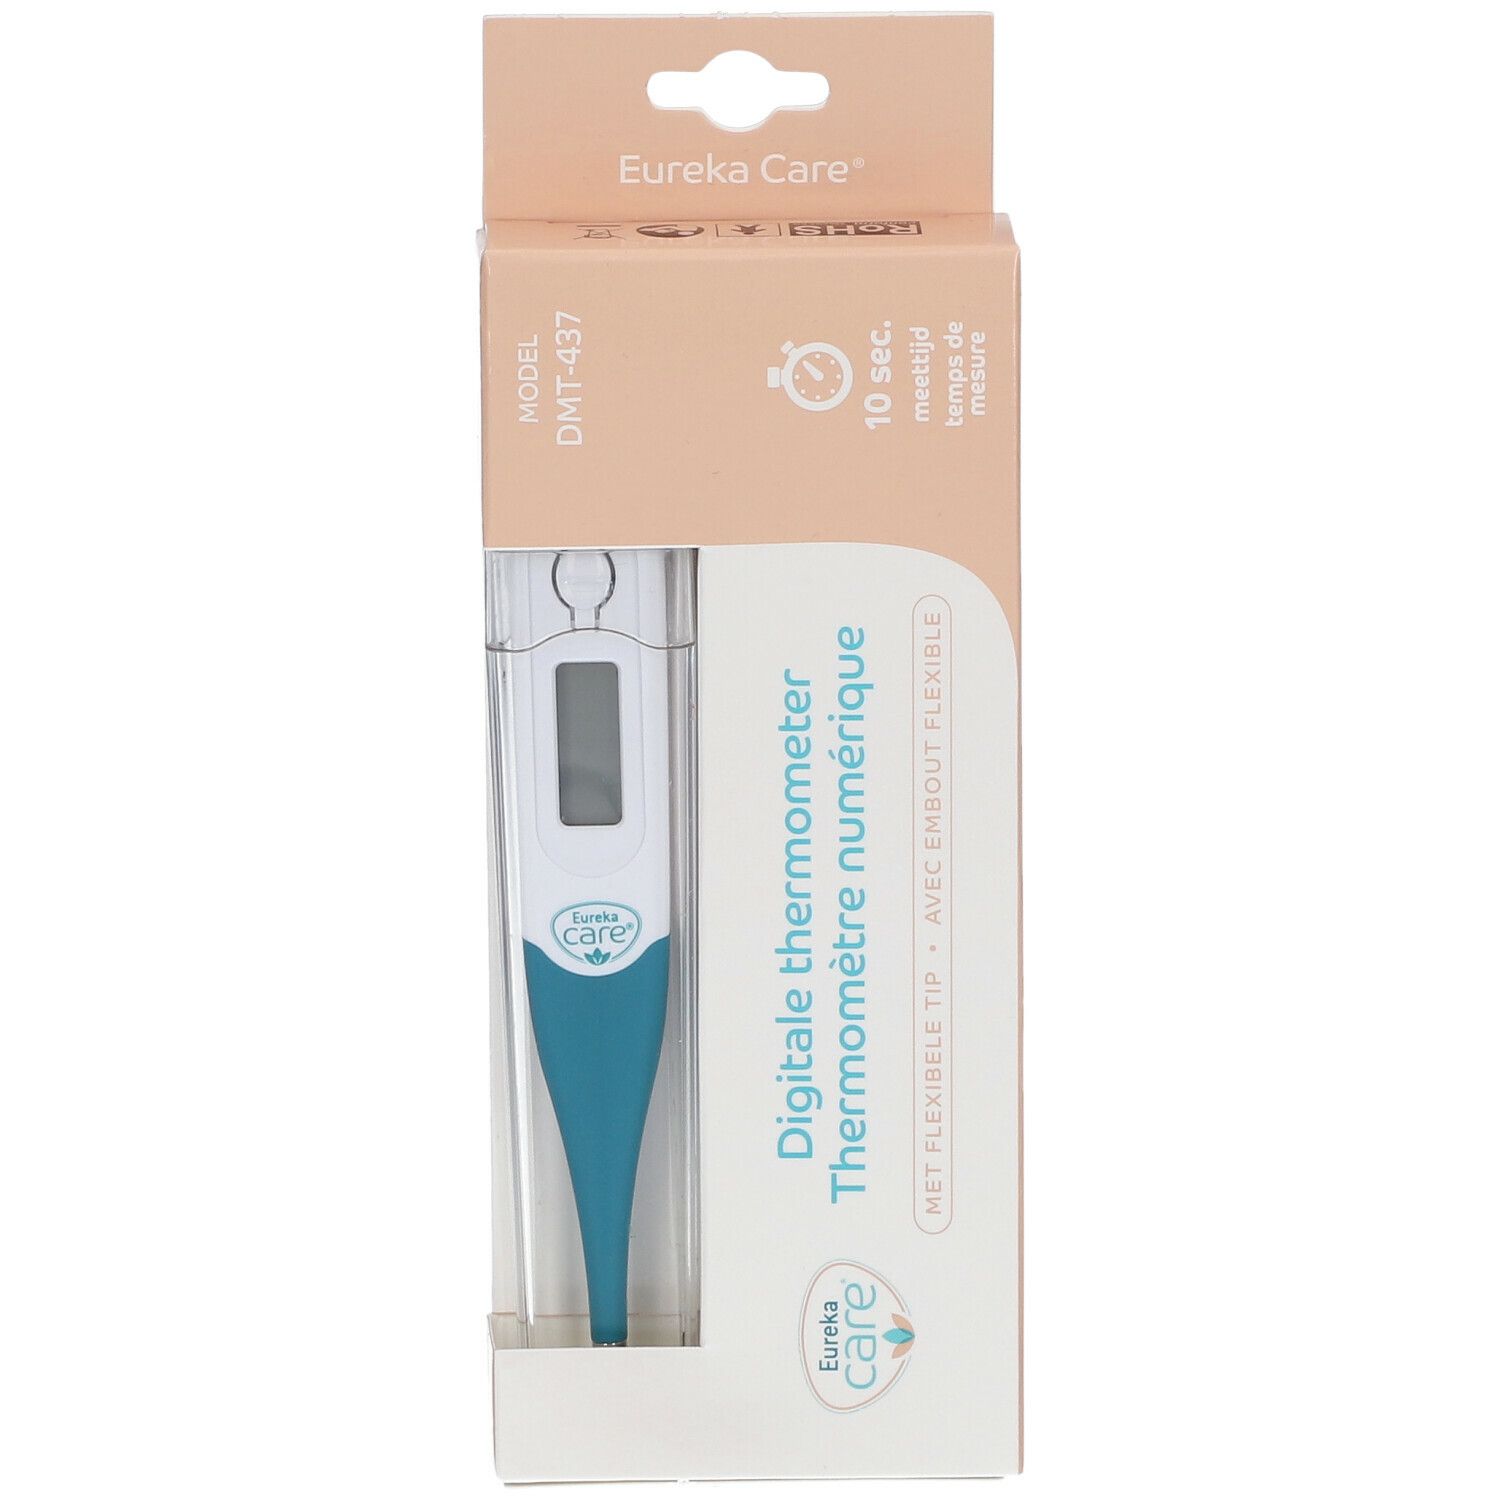 Eureka Care® Thermomètre Numérique Embout flexible - 10 secondes